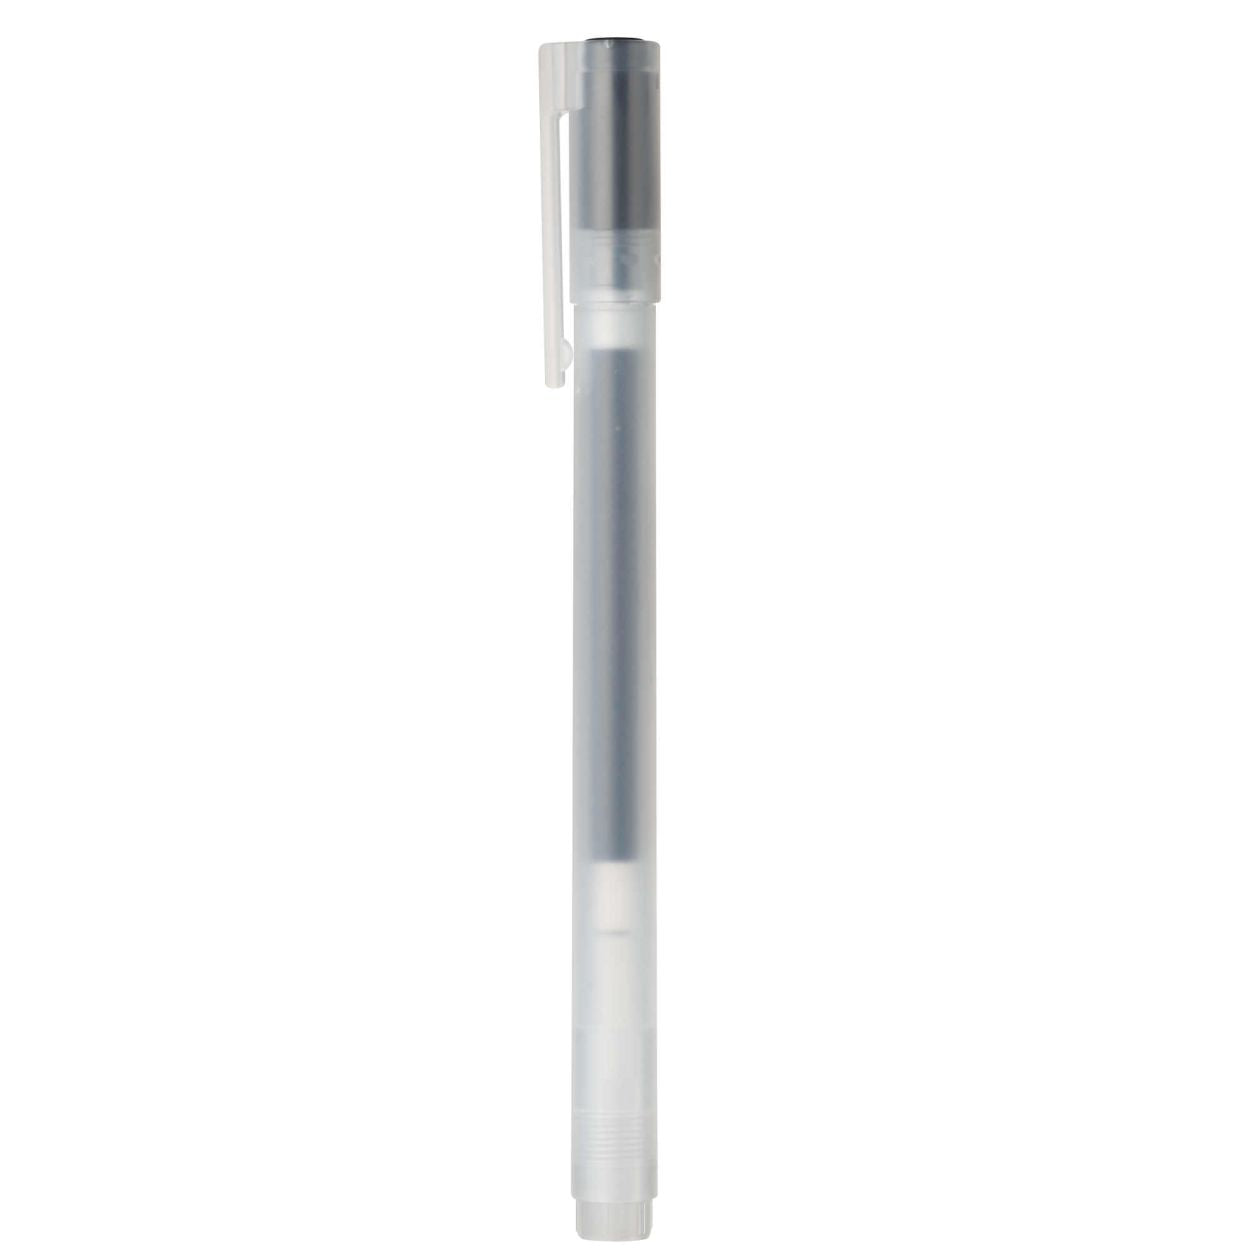 Gel Ink Cap Type Pen 0.5mm